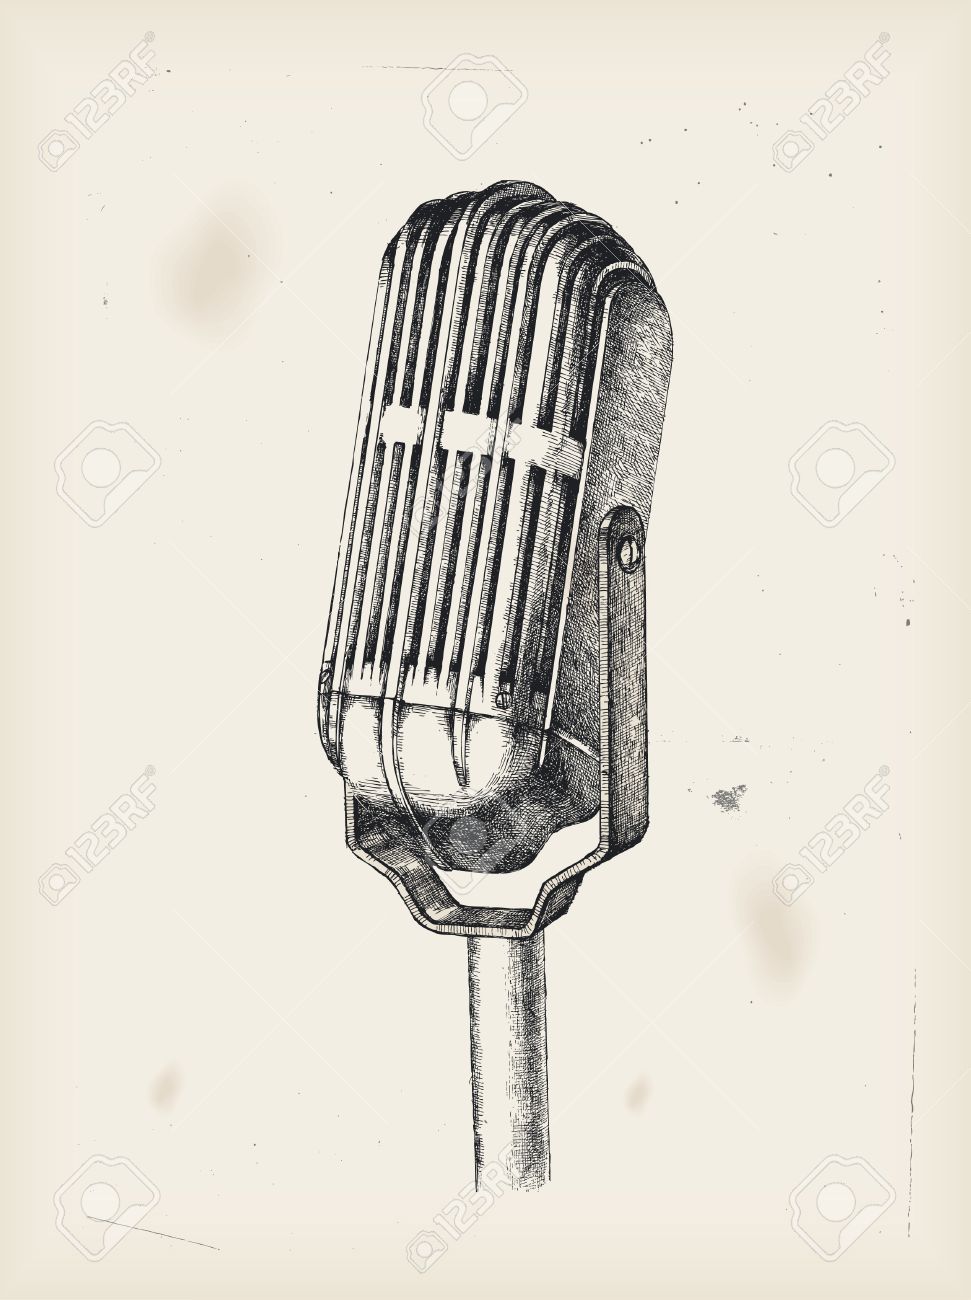 Vintage Microphone Drawing at GetDrawings Free download